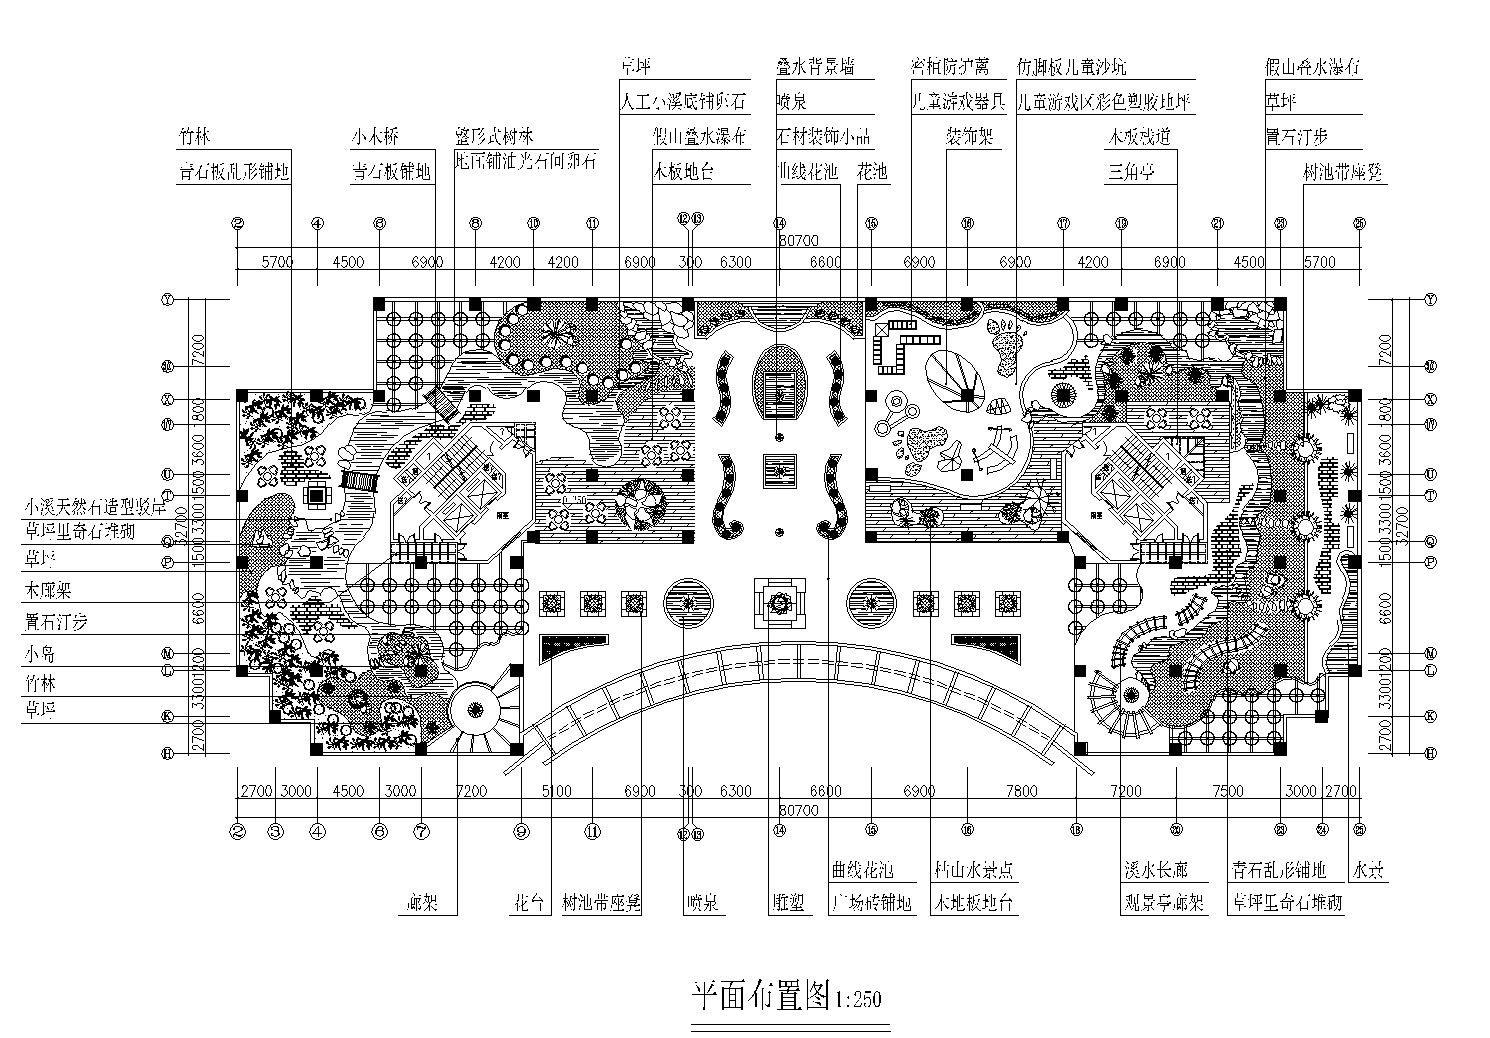 3张屋顶花园景观设计CAD平面图